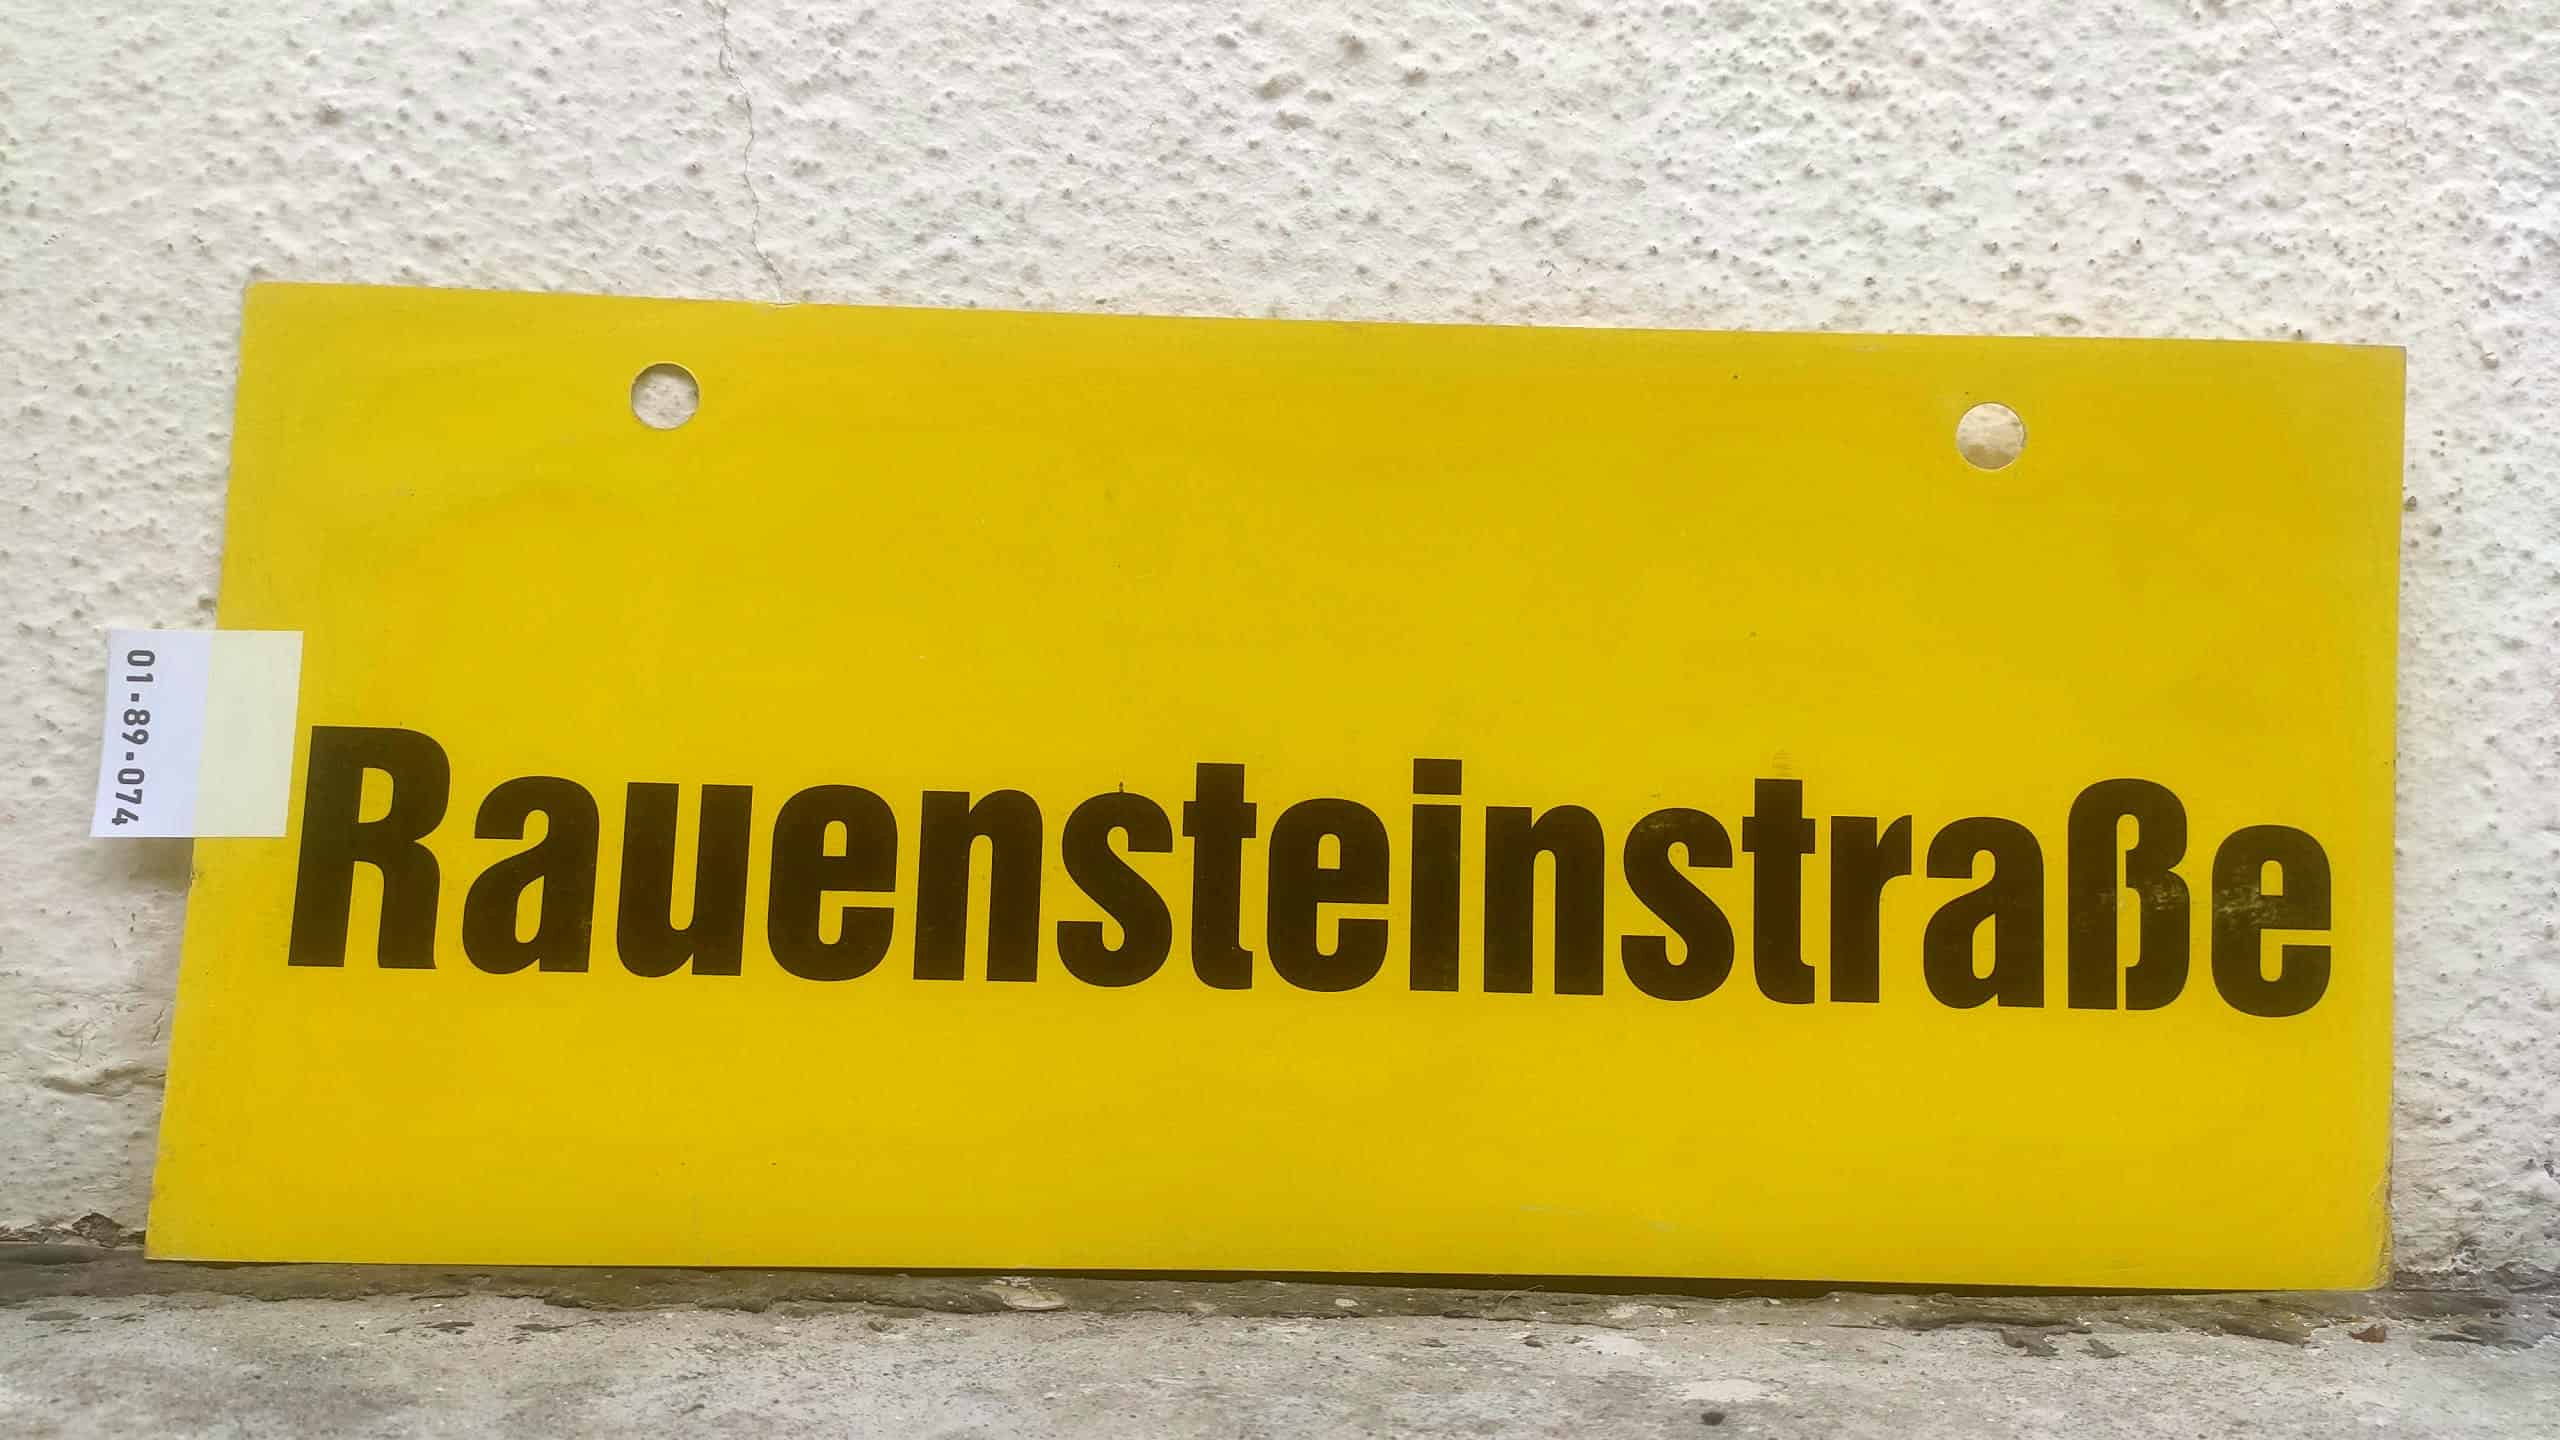 Rauensteinstraße